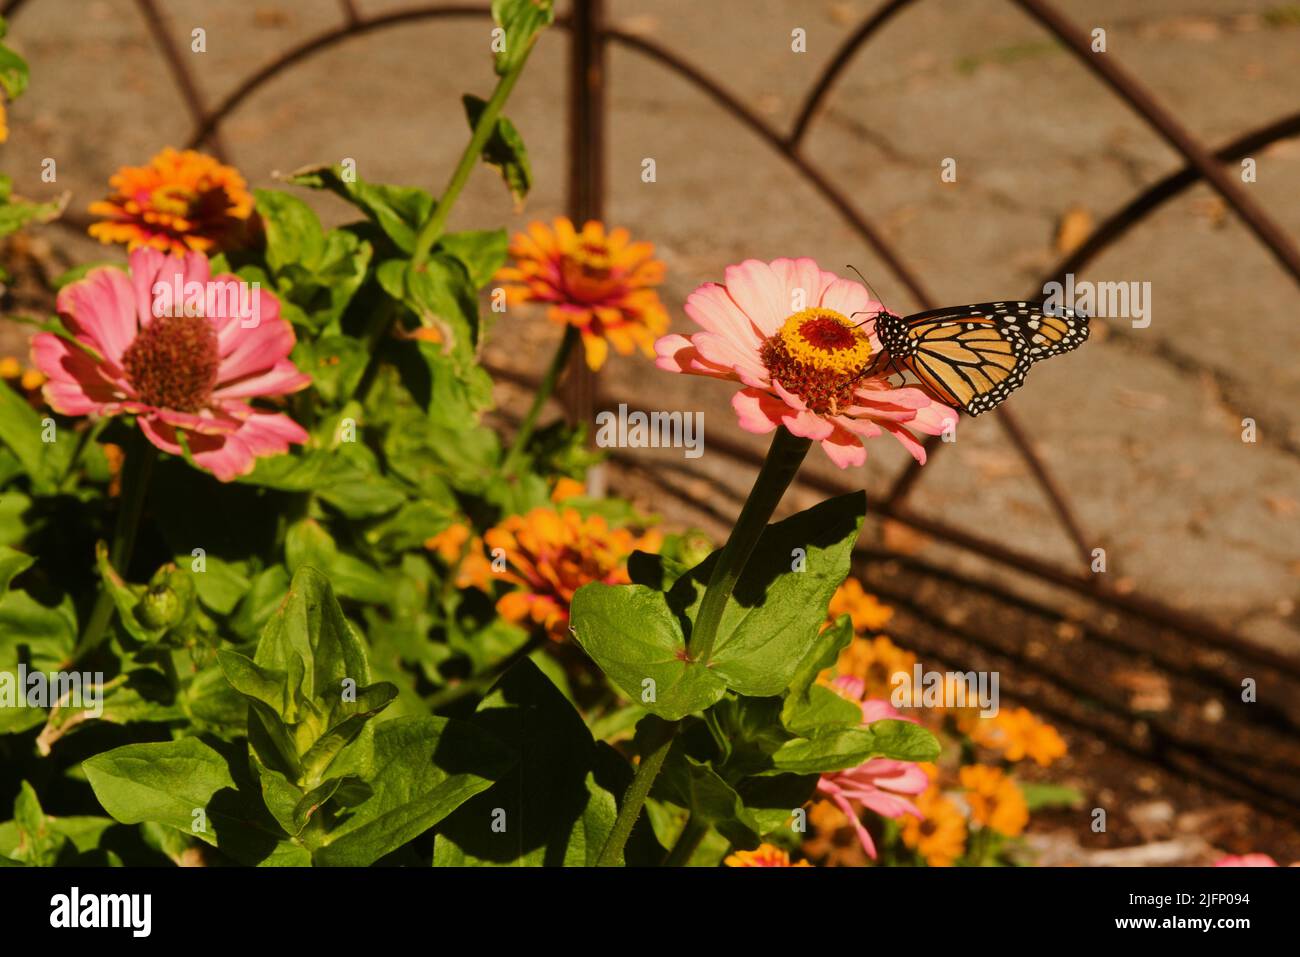 Das farbenfrohe Leben im Garten, Nahaufnahme eines Schmetterlings, der die dekorative Blütenblüte bestäubt. Reiche n Muster, Linien, Form, Form und Farbe Stockfoto